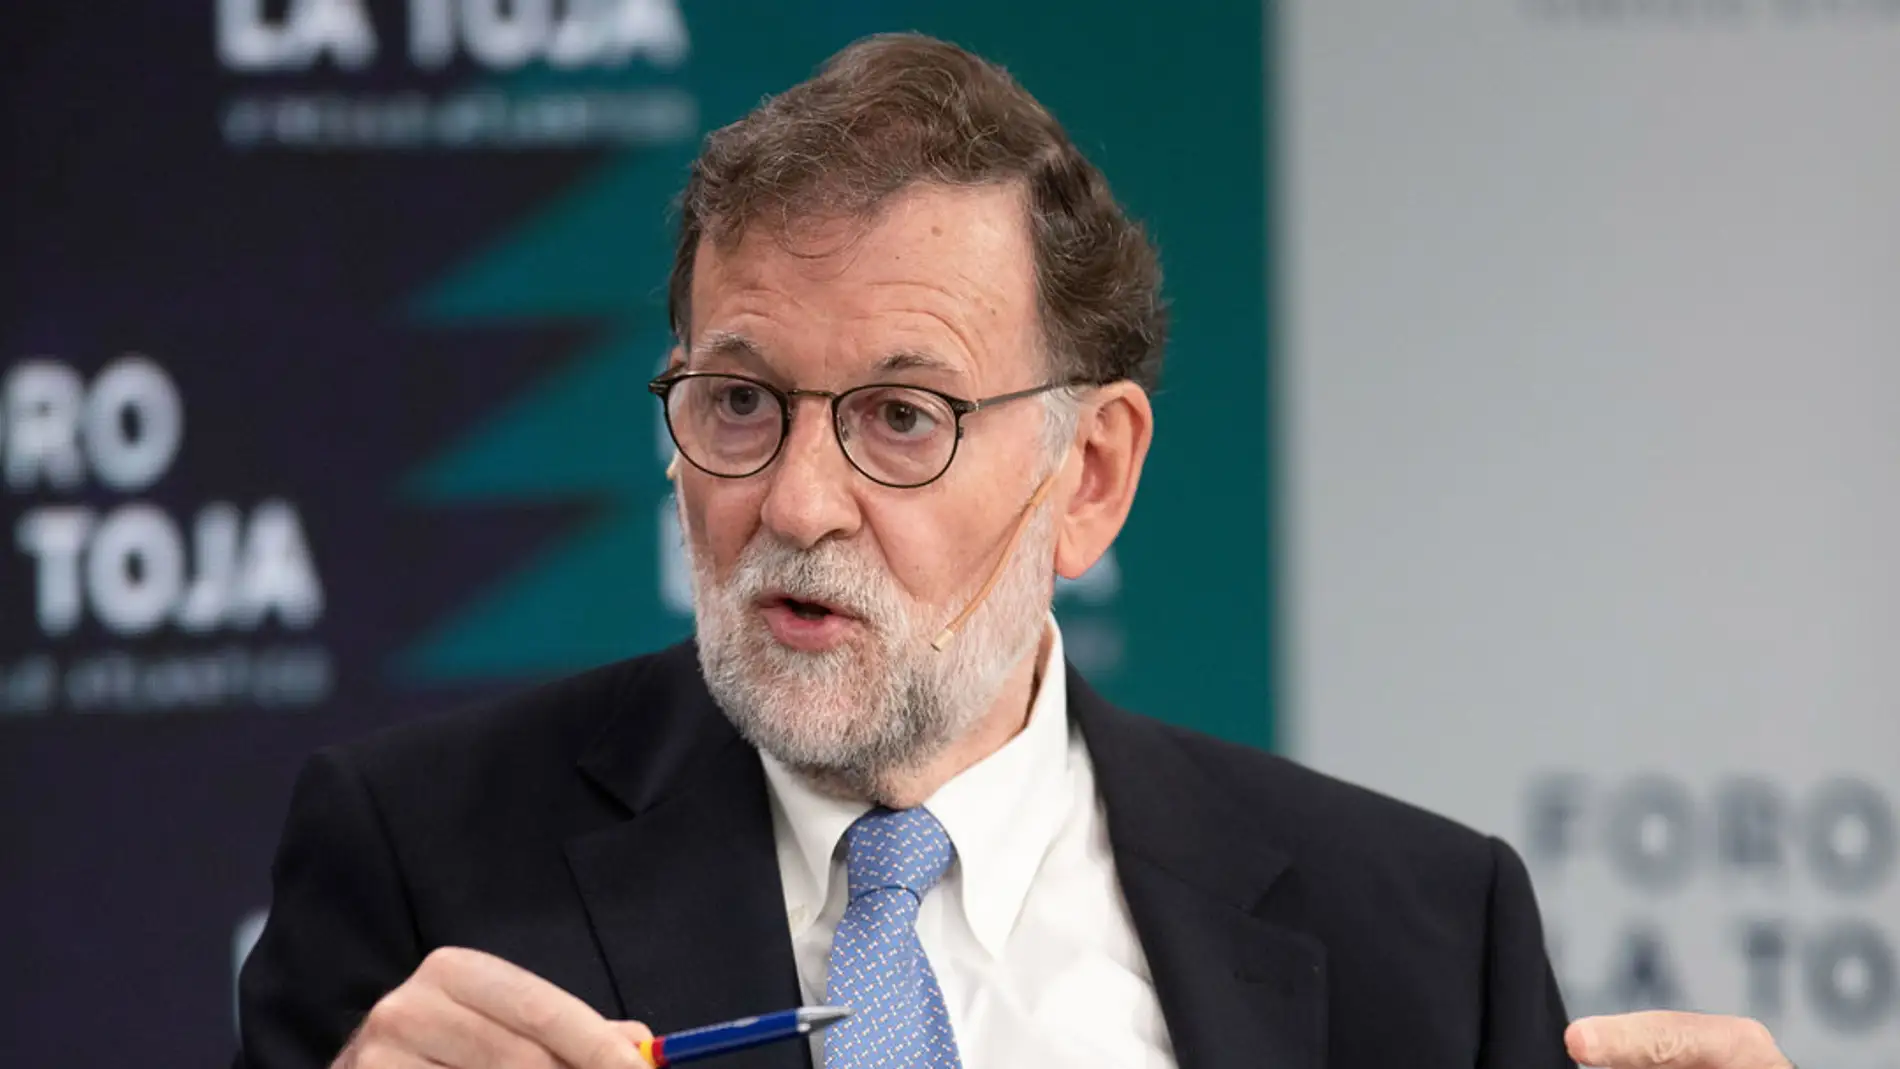 Mariano Rajoy: "El PNV ha acabado siendo el monaguillo de Frankestein"